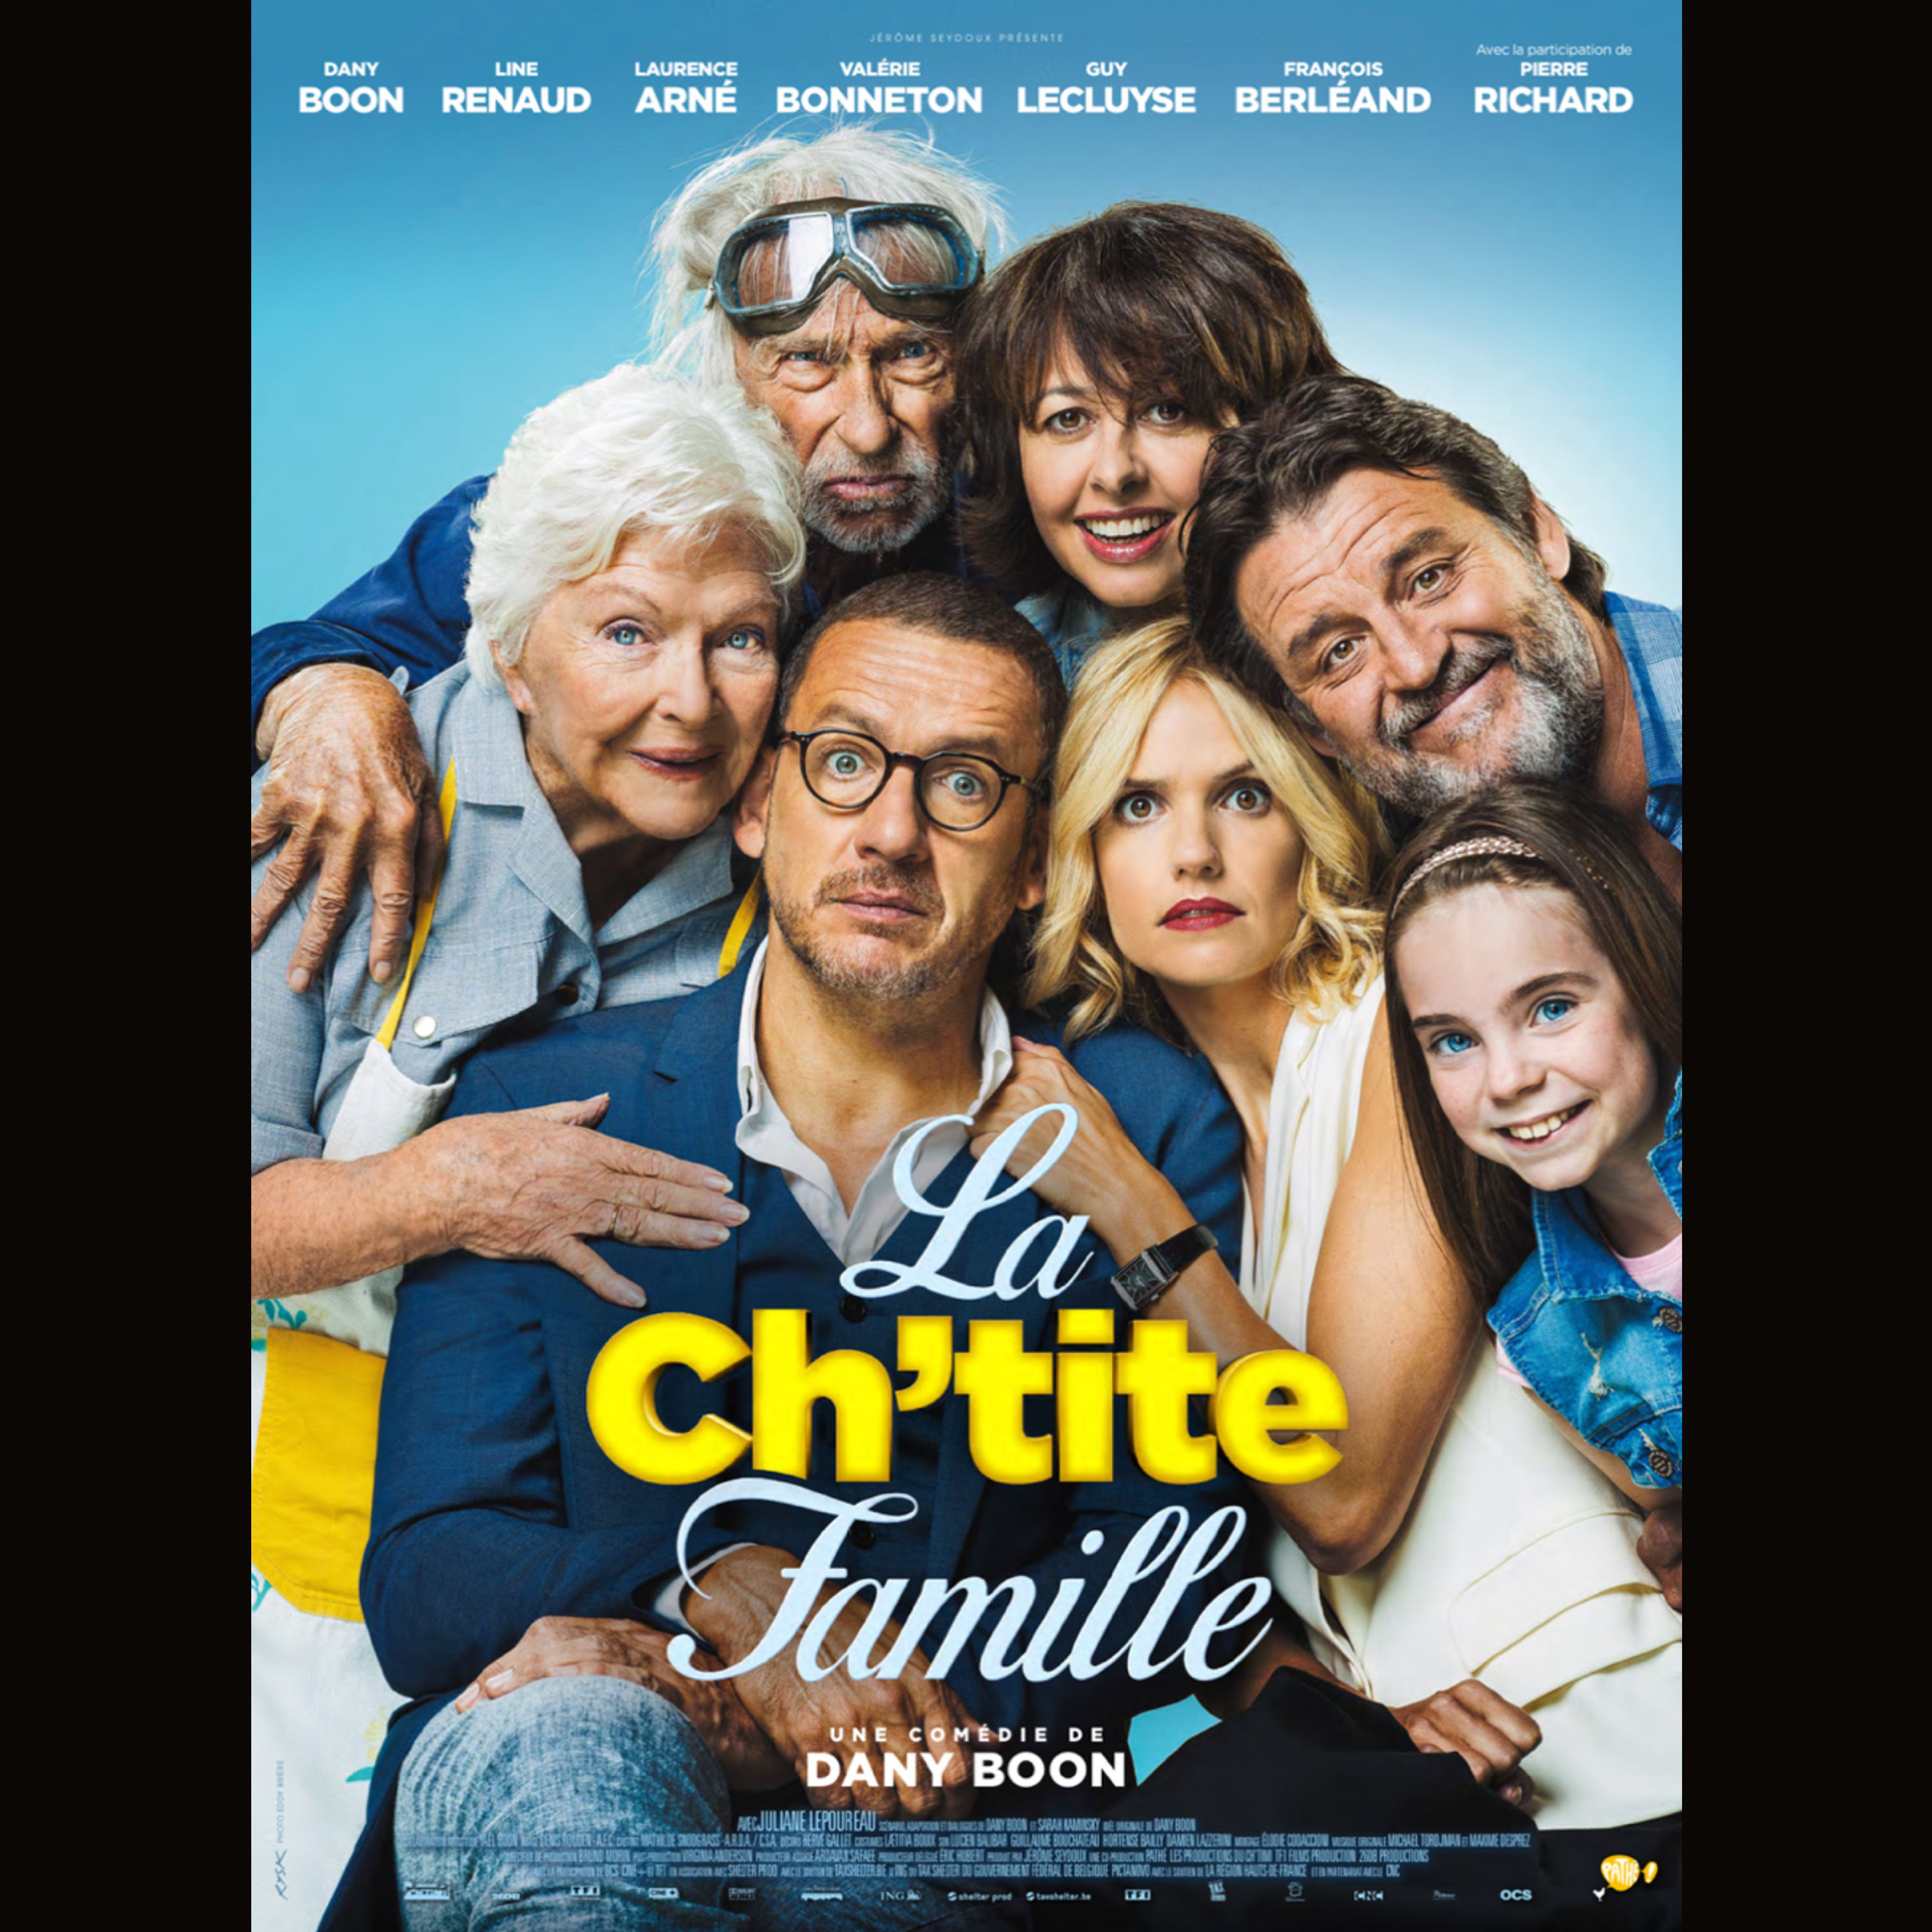 Рейтинг комедий для семейного просмотра. От семьи не убежишь / la Ch'tite famille (2018). Лоранс Арне от семьи не убежишь. Пьер Ришар от семьи не убежишь.